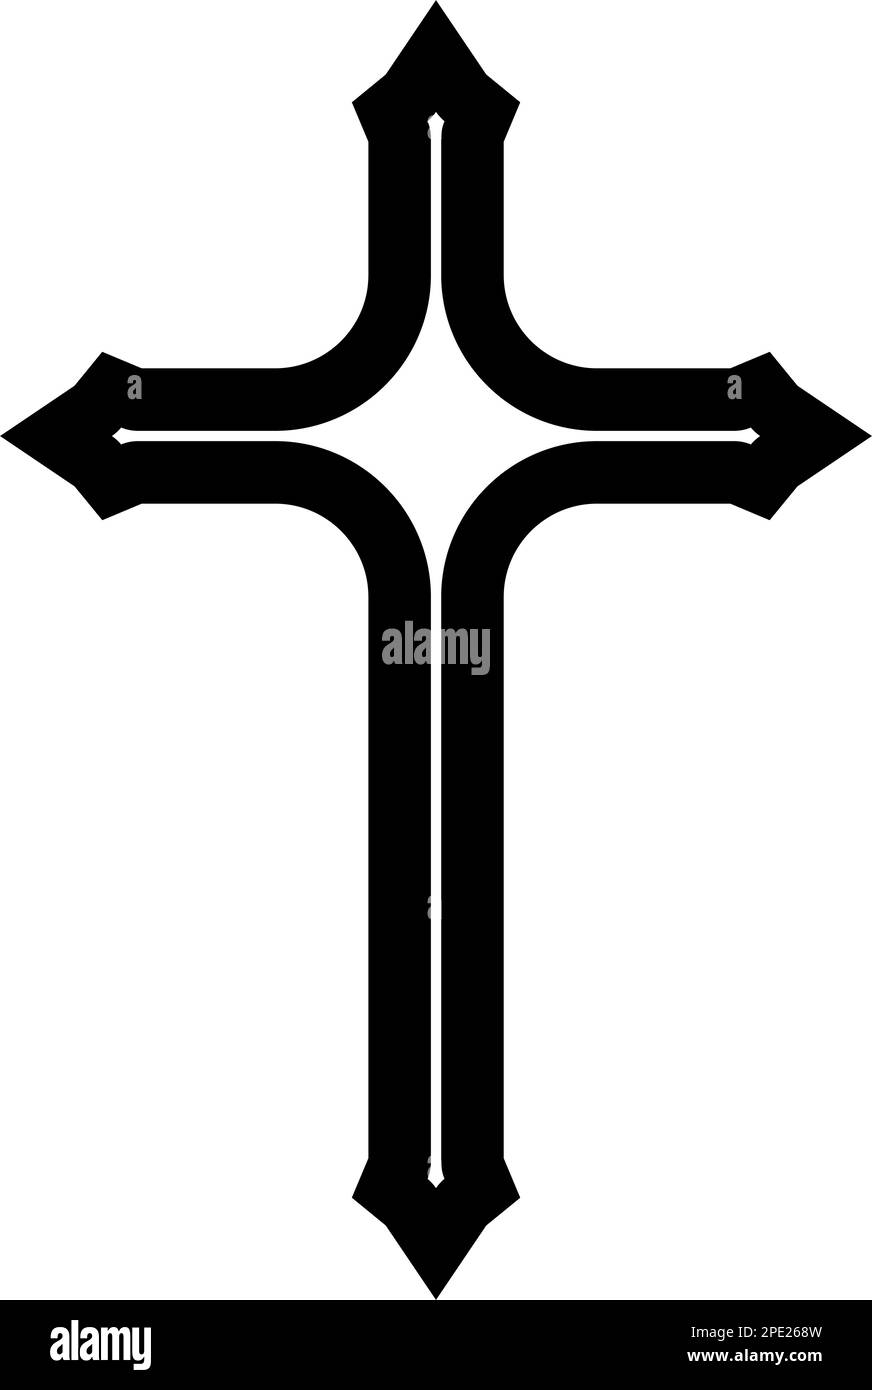 Simbolo della croce cristiana Foto e Immagini Stock in Bianco e Nero - Alamy